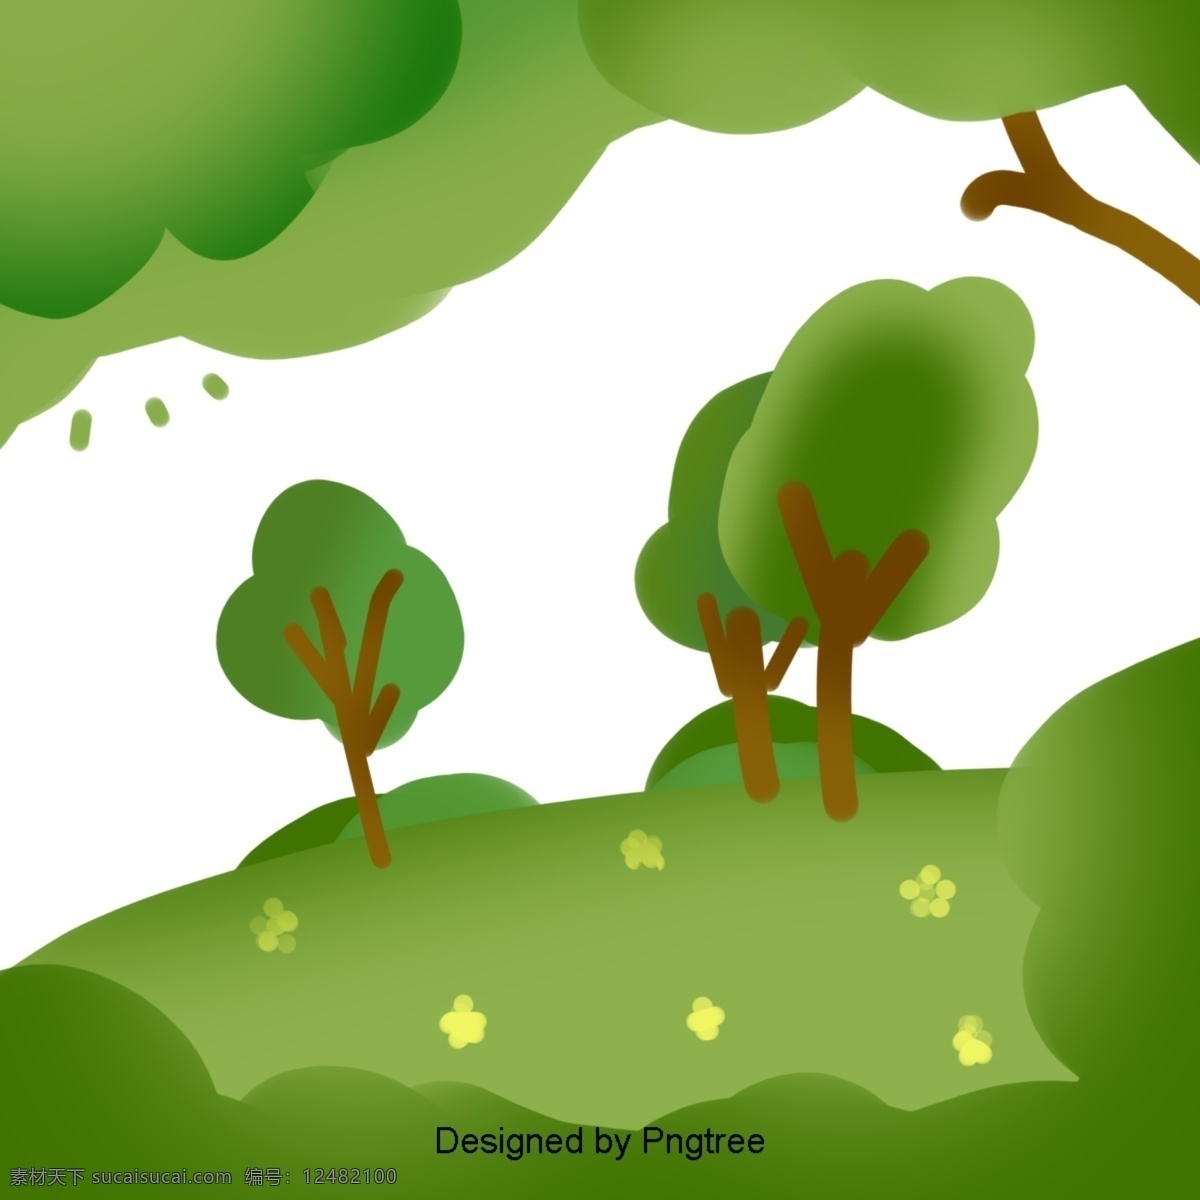 简单 自然景观 元素 时尚 风格 自然 绿色植物 景观 创意 图形 绘画 树叶